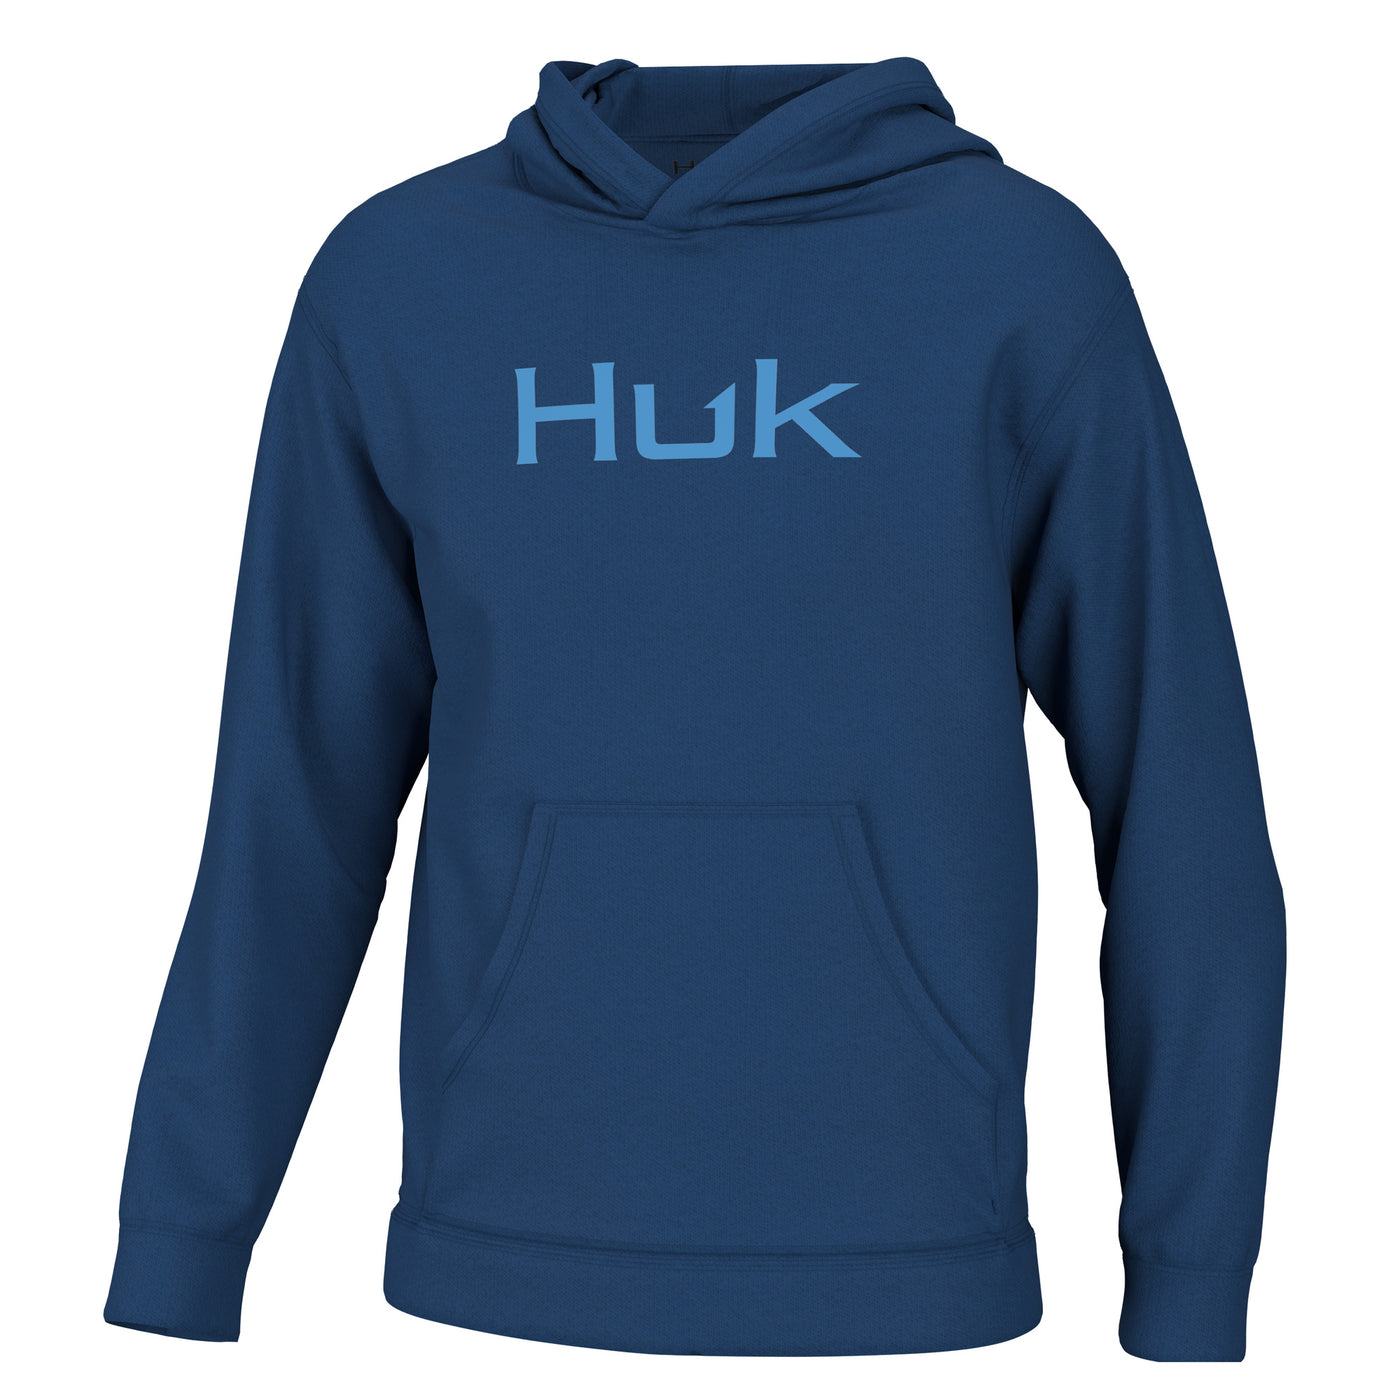 Huk Kids Cotton Logo Hoodie